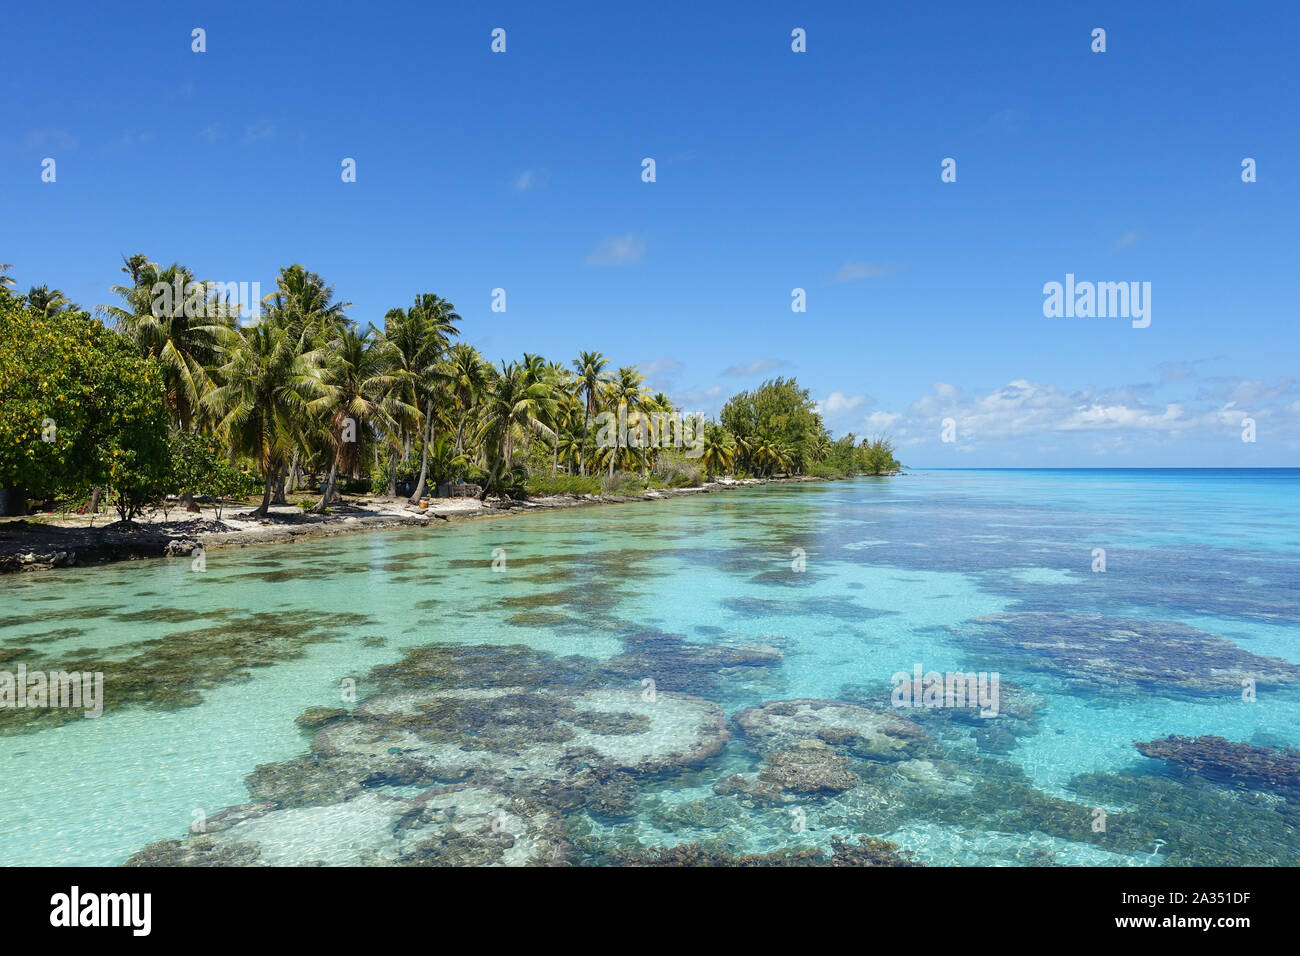 Palmiers bordent une plage de sable à côté d'un lagon tropical rempli de coral sous un ciel bleu Banque D'Images